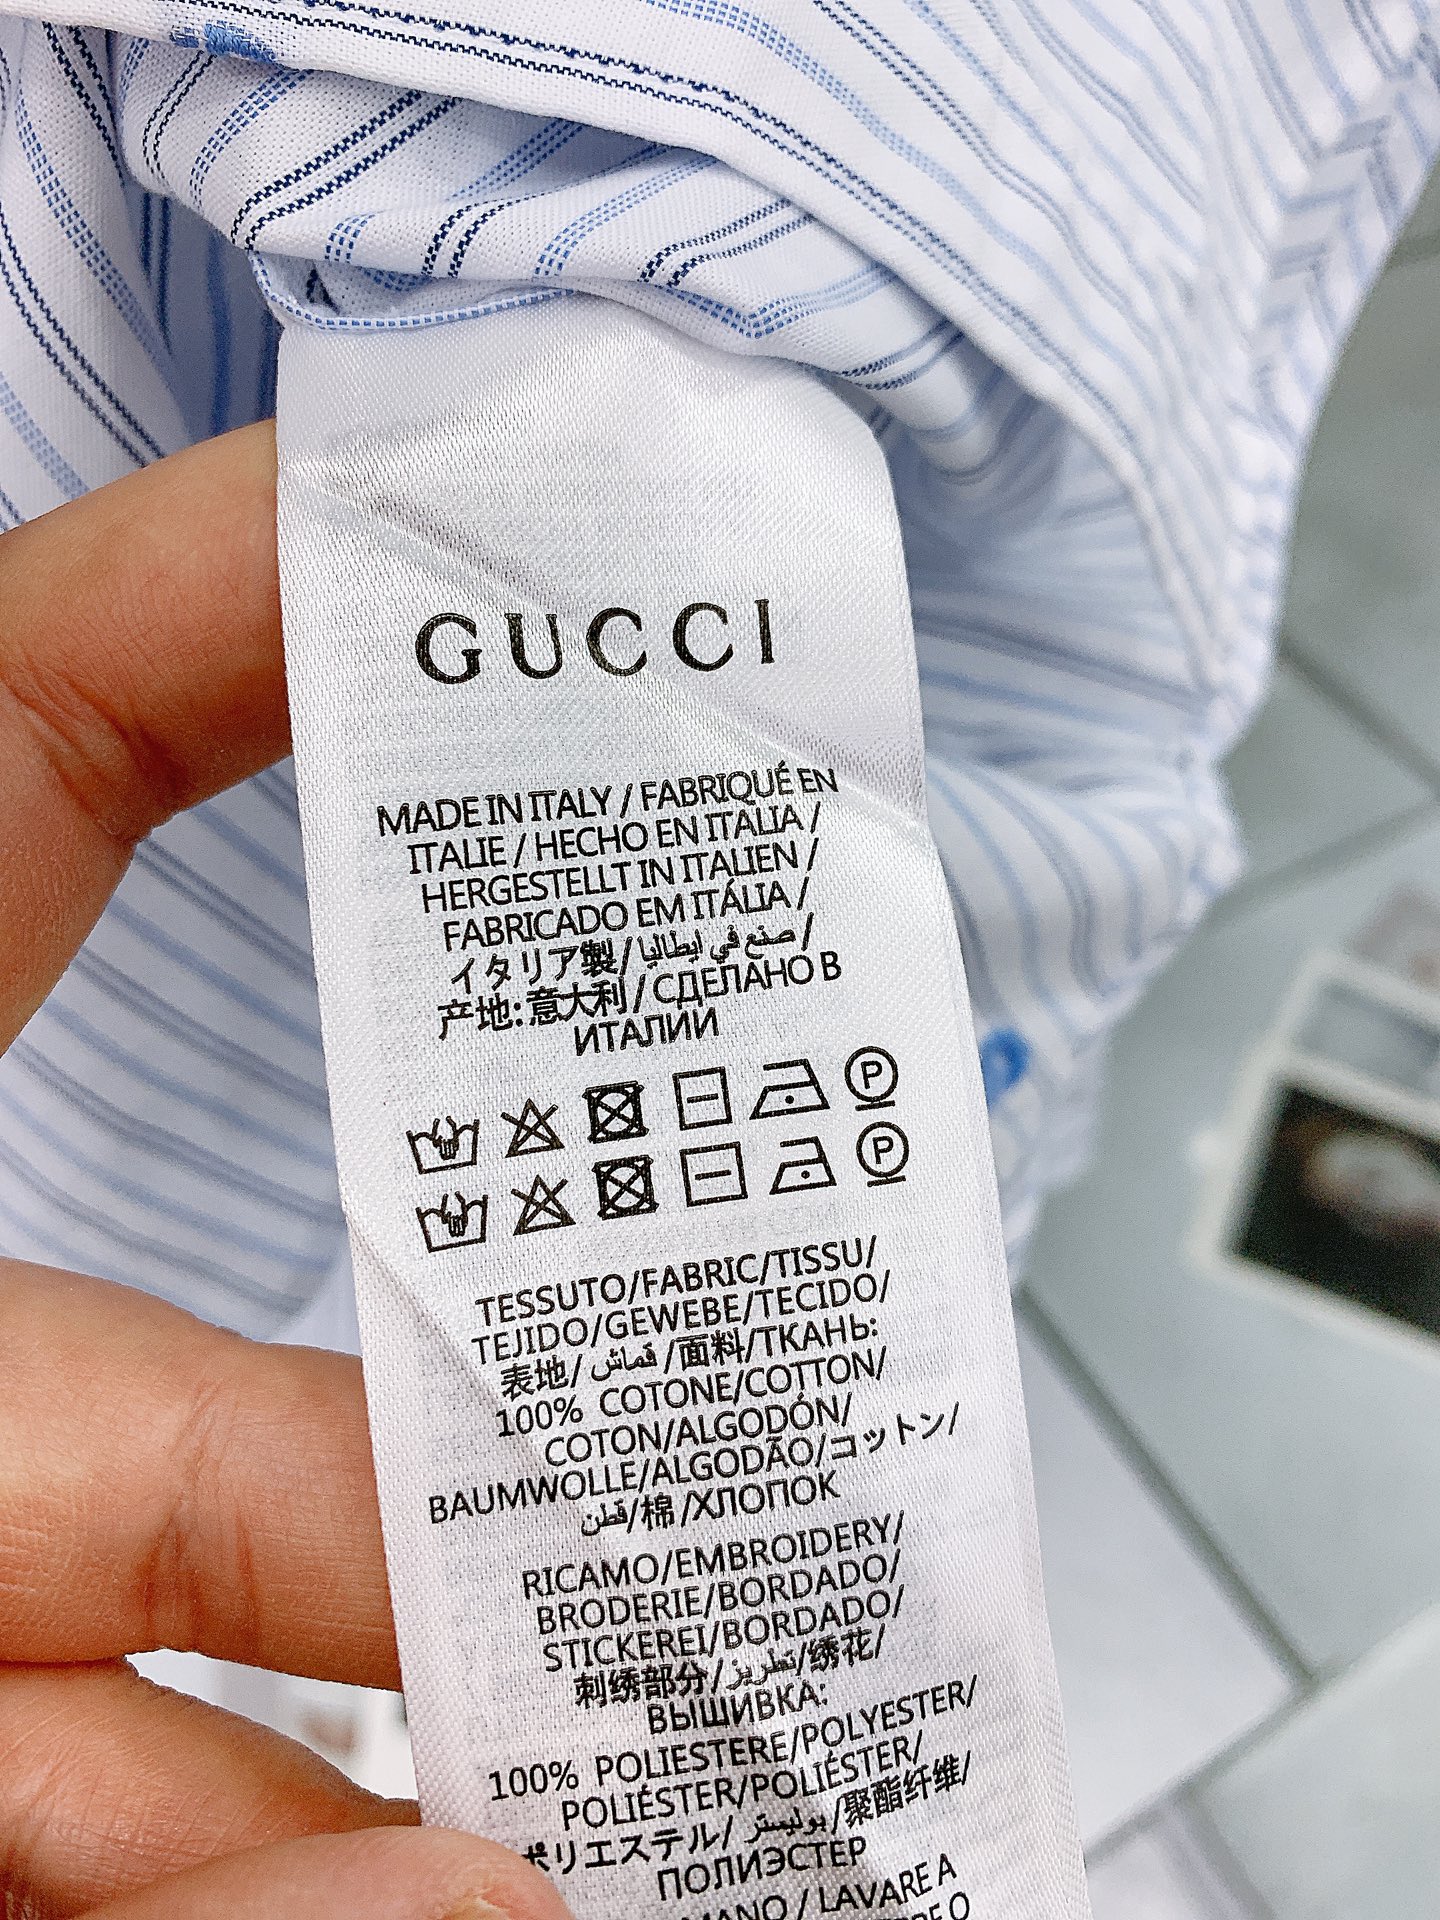 Gucci古驰2024SS春夏新品休闲条纹衬衫经典版型衬衫怎么穿都好看经典的款式每年都是爆款客供御用面料